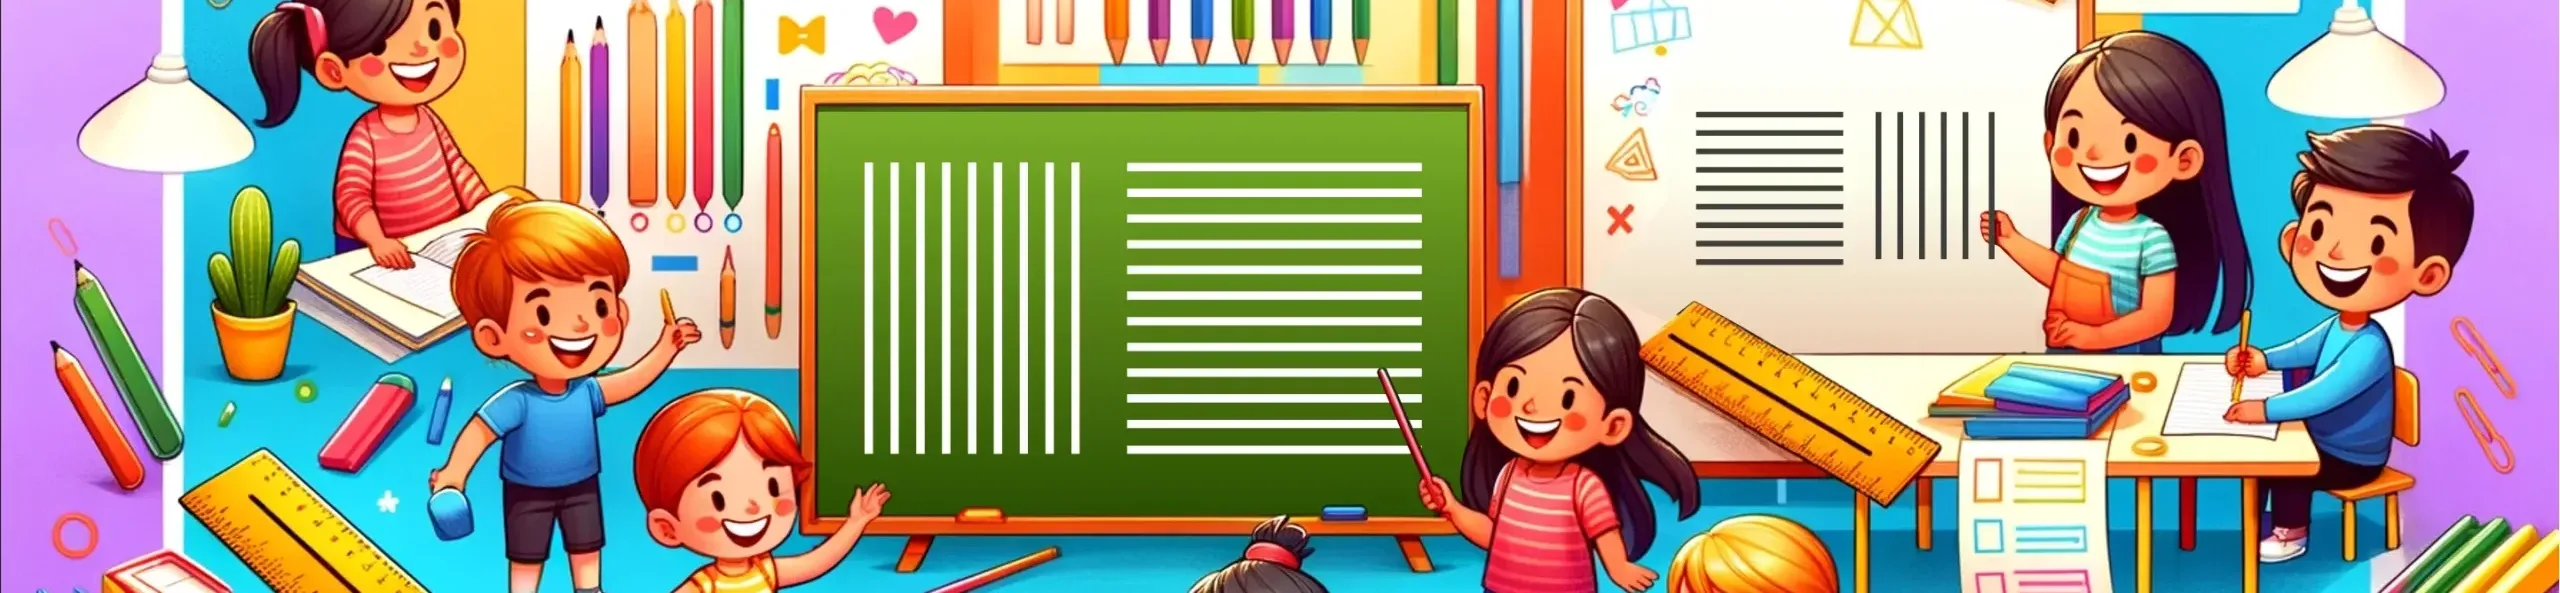 Activités graphisme MS - exercices sur les lignes verticales et horizontales pour développer la motricité fine des enfants en Maternelle